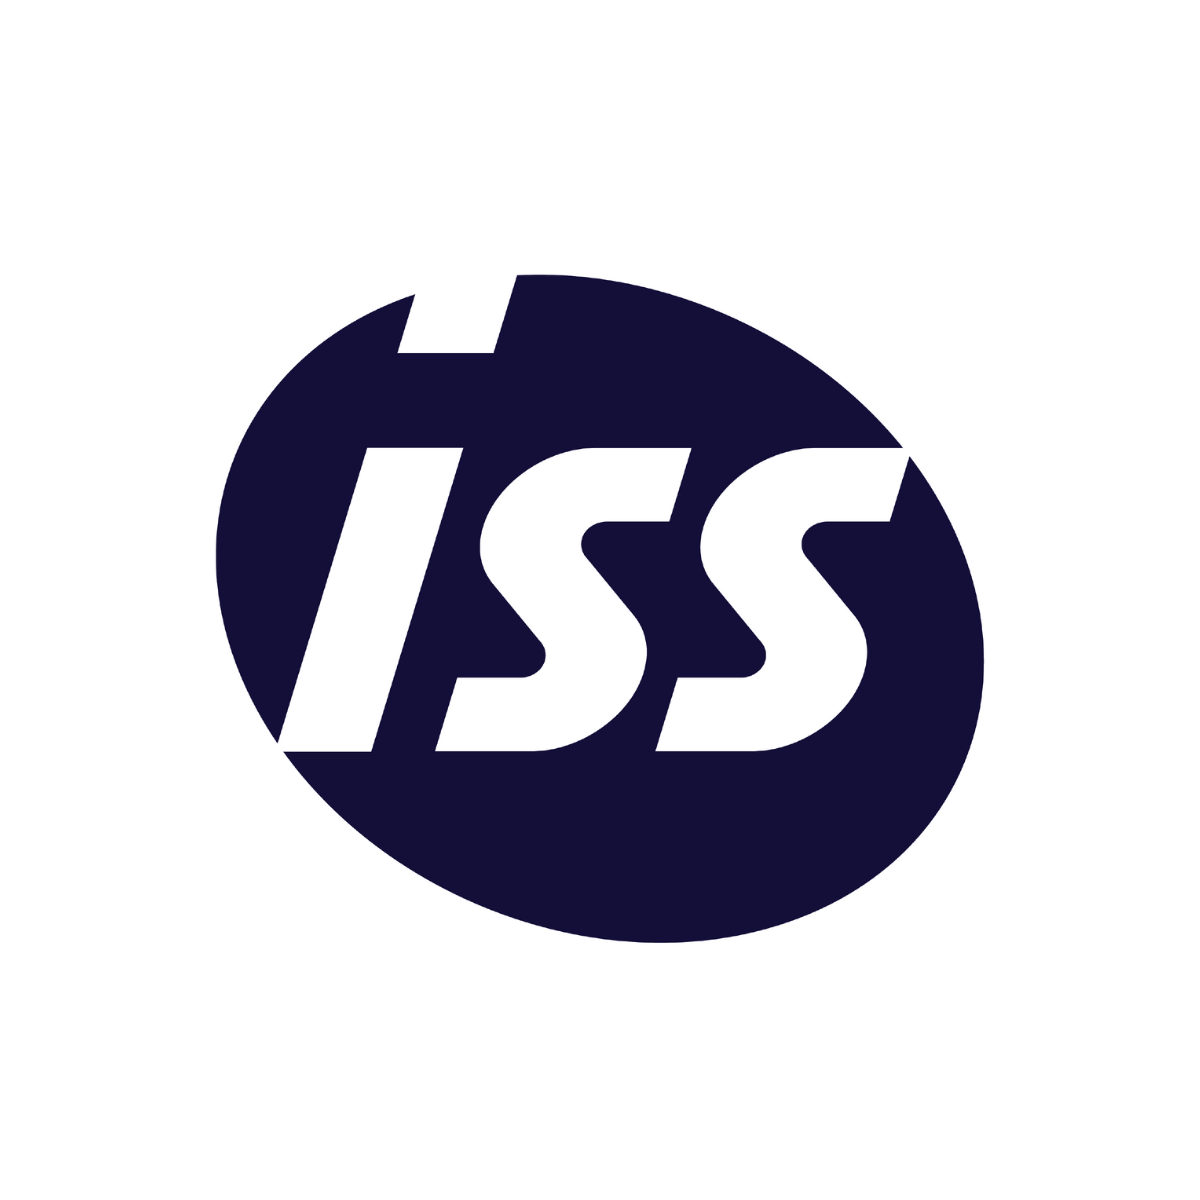 Le logo de ISS est affiché ici pour mettre en avant son partenariat avec AKTISEA dans l'optimisation de la politique handicap de l'entreprise. Chez AKTISEA, entreprise adaptée, nous sommes engagés pour plus d'inclusion.